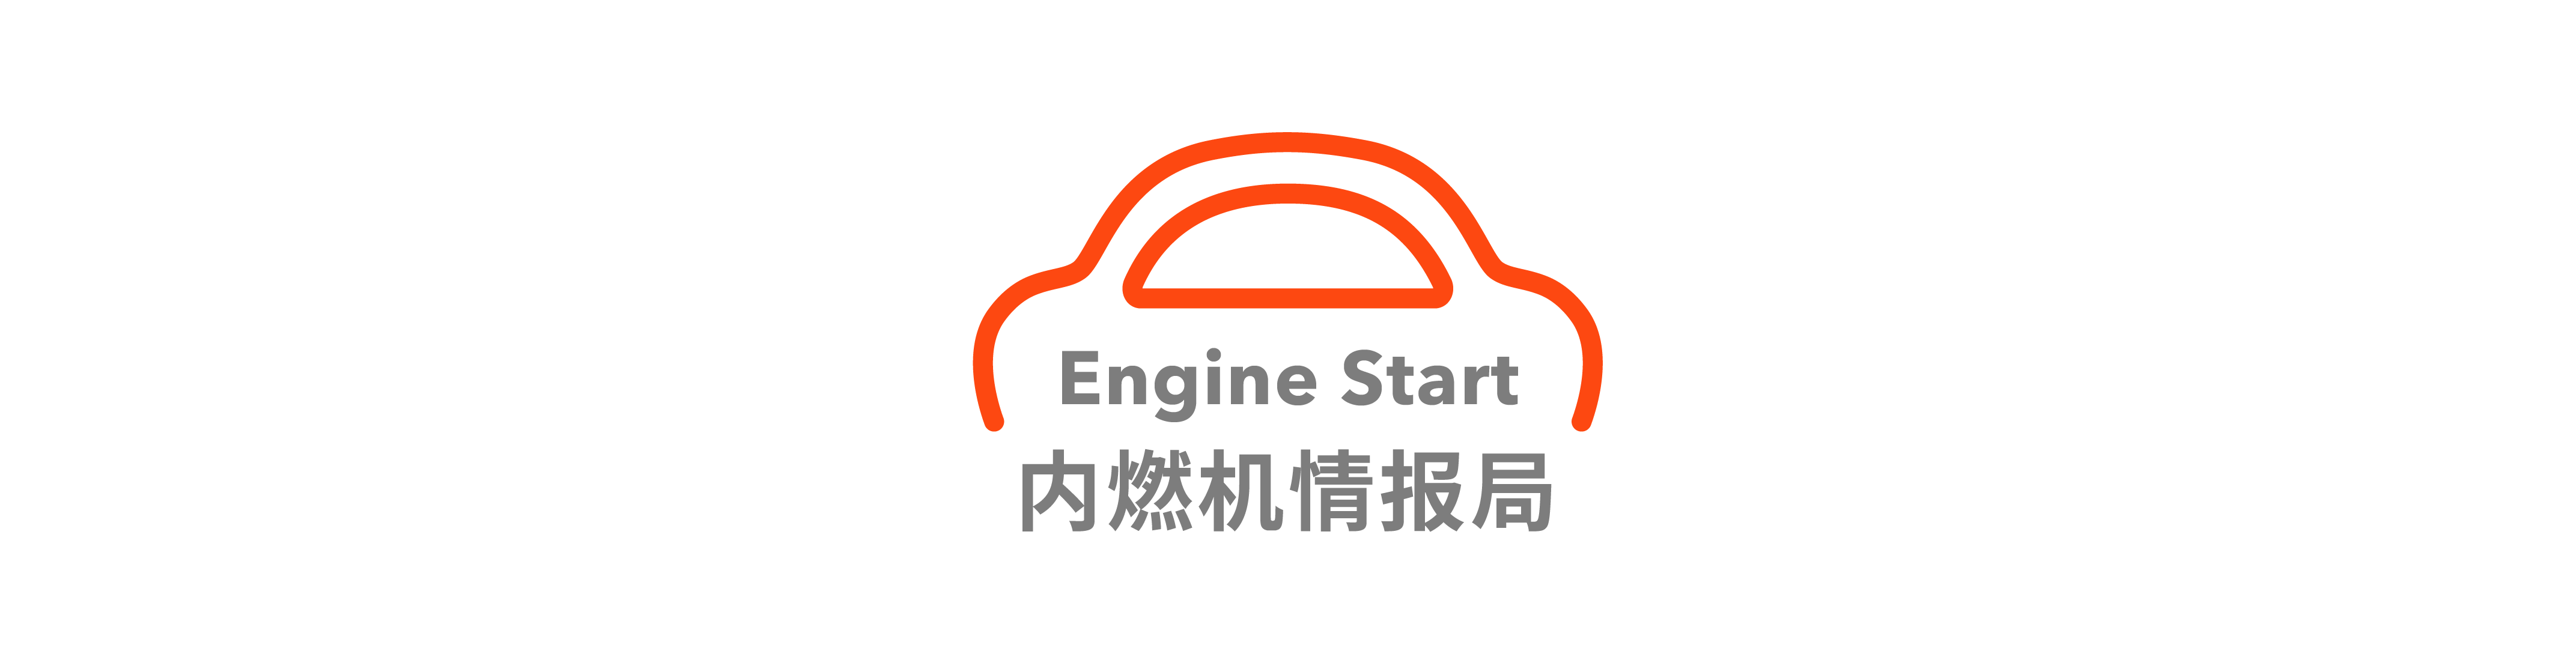 董車日報 | 特斯拉或在上海建第二工廠 / 福特資深工程師加入蘋果汽車 / 廣汽本田帶來全新 SUV